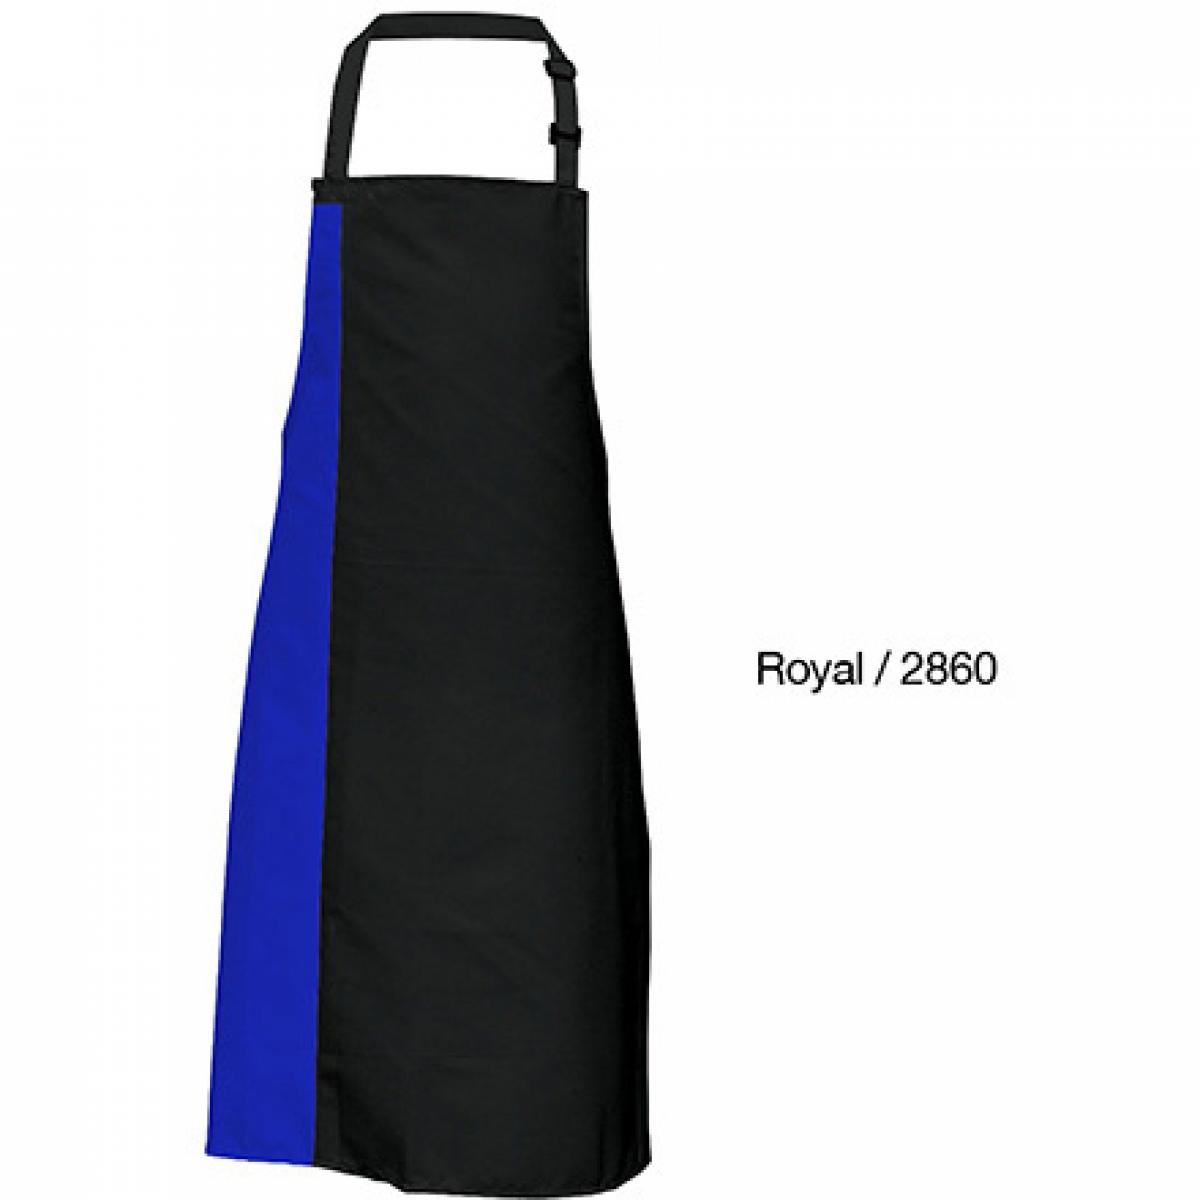 Hersteller: Link Kitchen Wear Herstellernummer: DS8572 Artikelbezeichnung: Duo Apron - 72 x 85 cm - Waschbar bis 60 °C Farbe: Black/Royal (ca. Pantone 286)